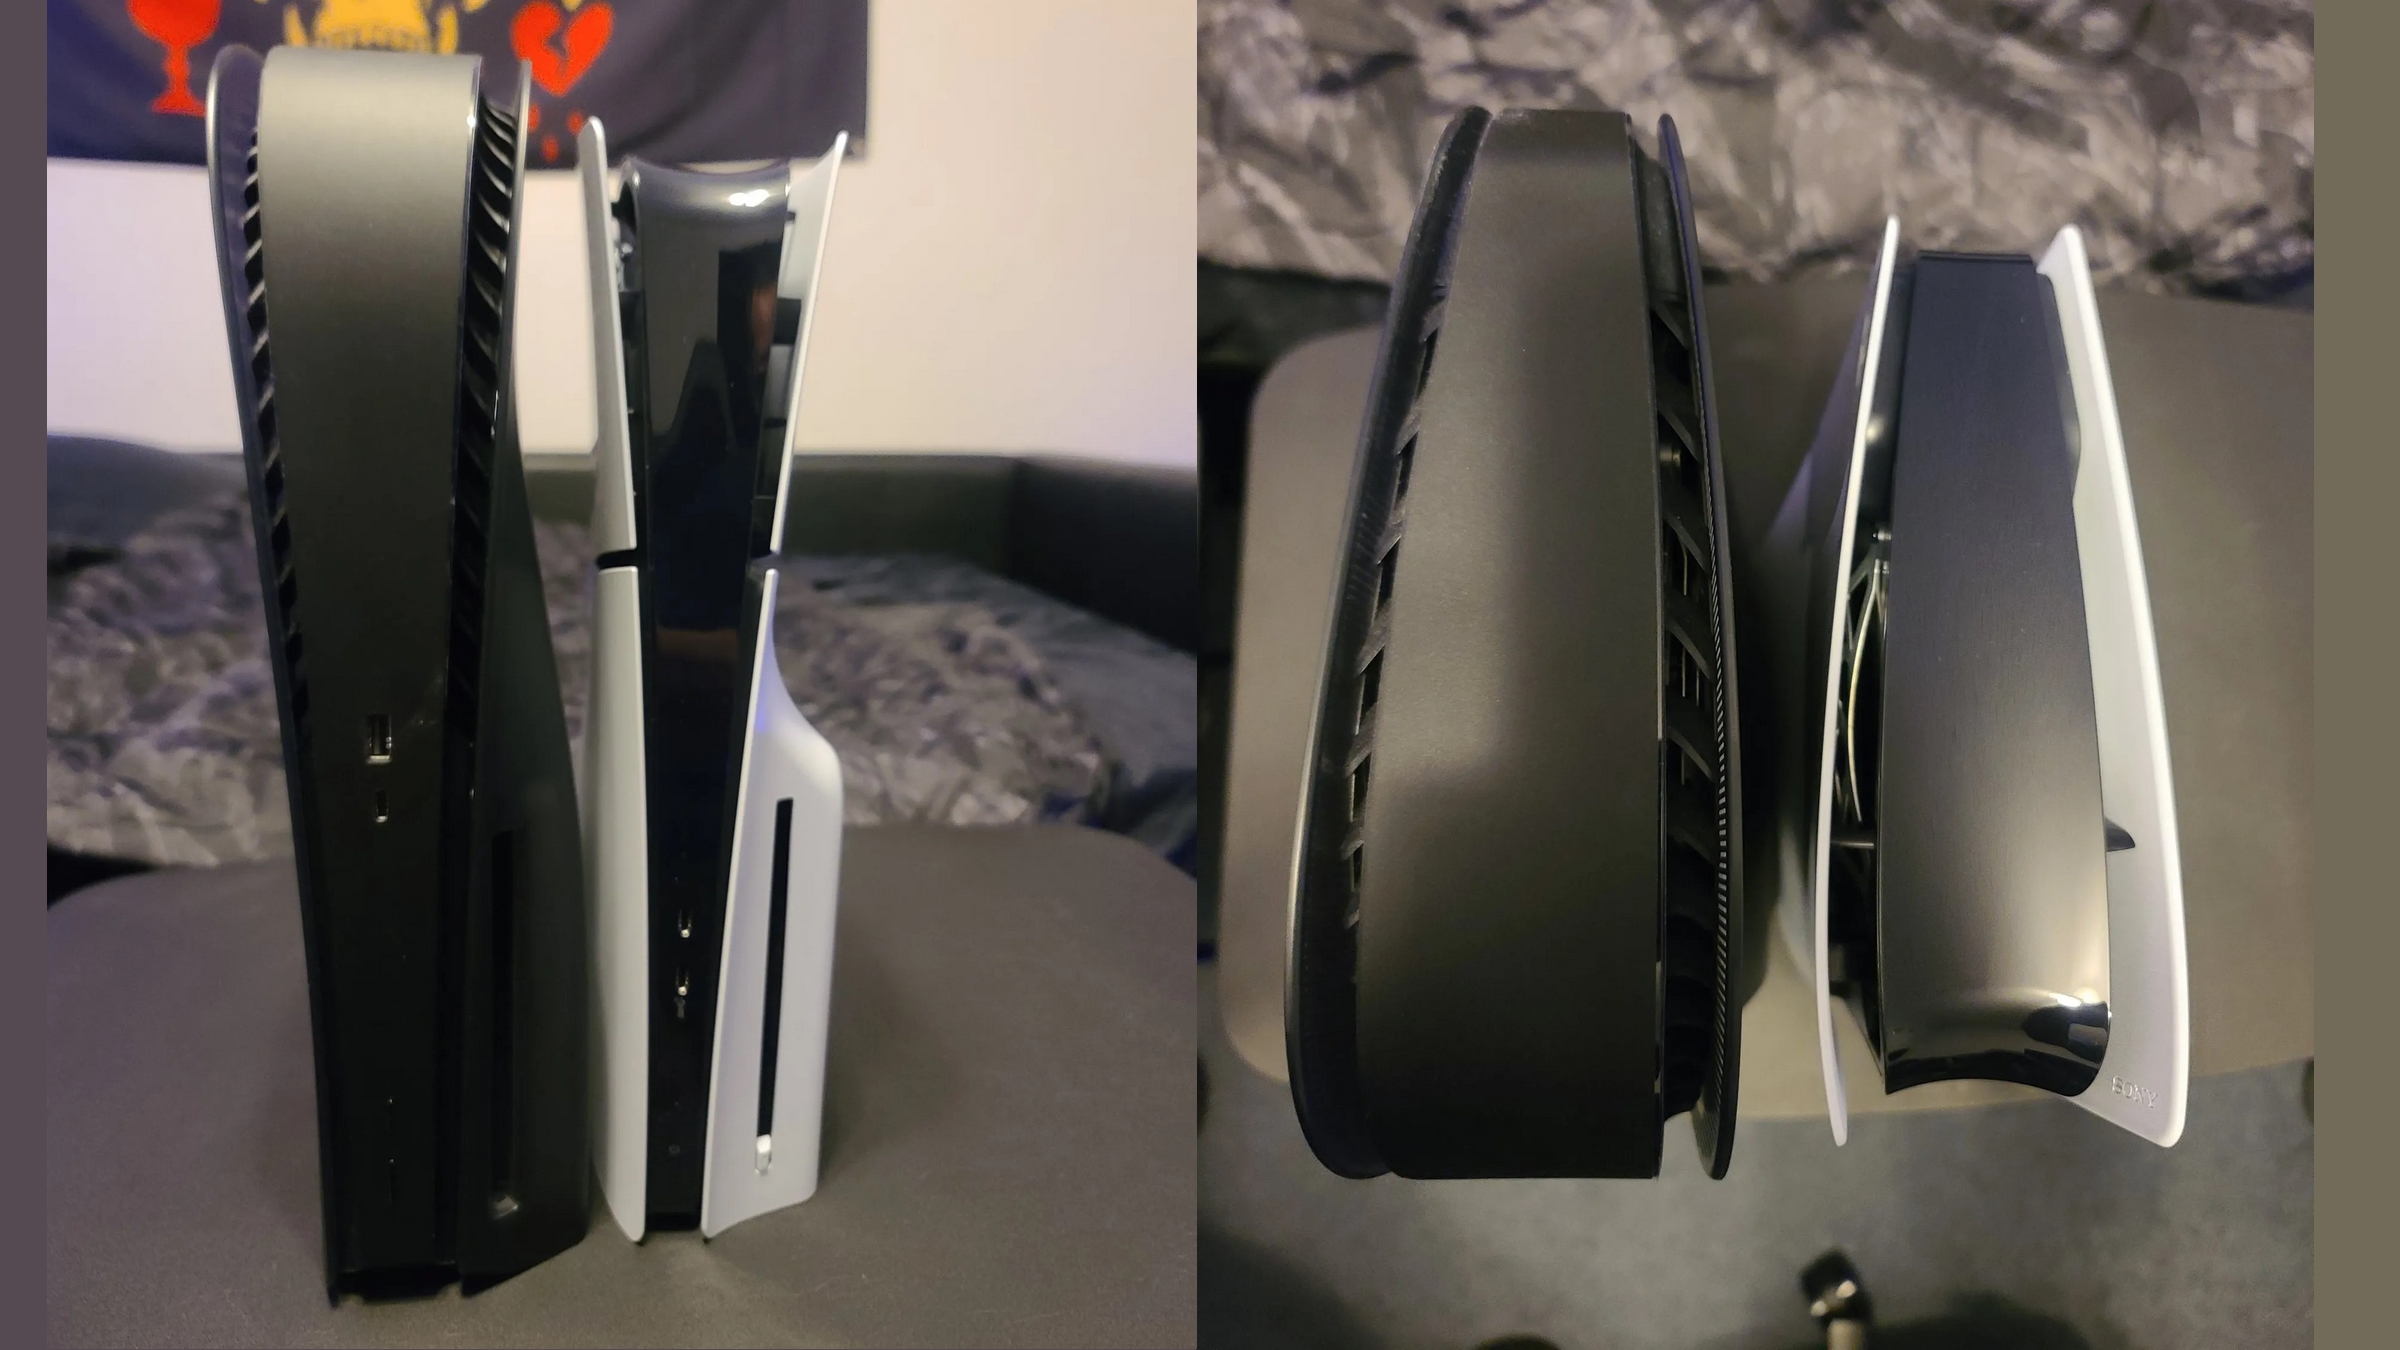 Crean una PS5 Slim con un grosor inferior a 2 cm